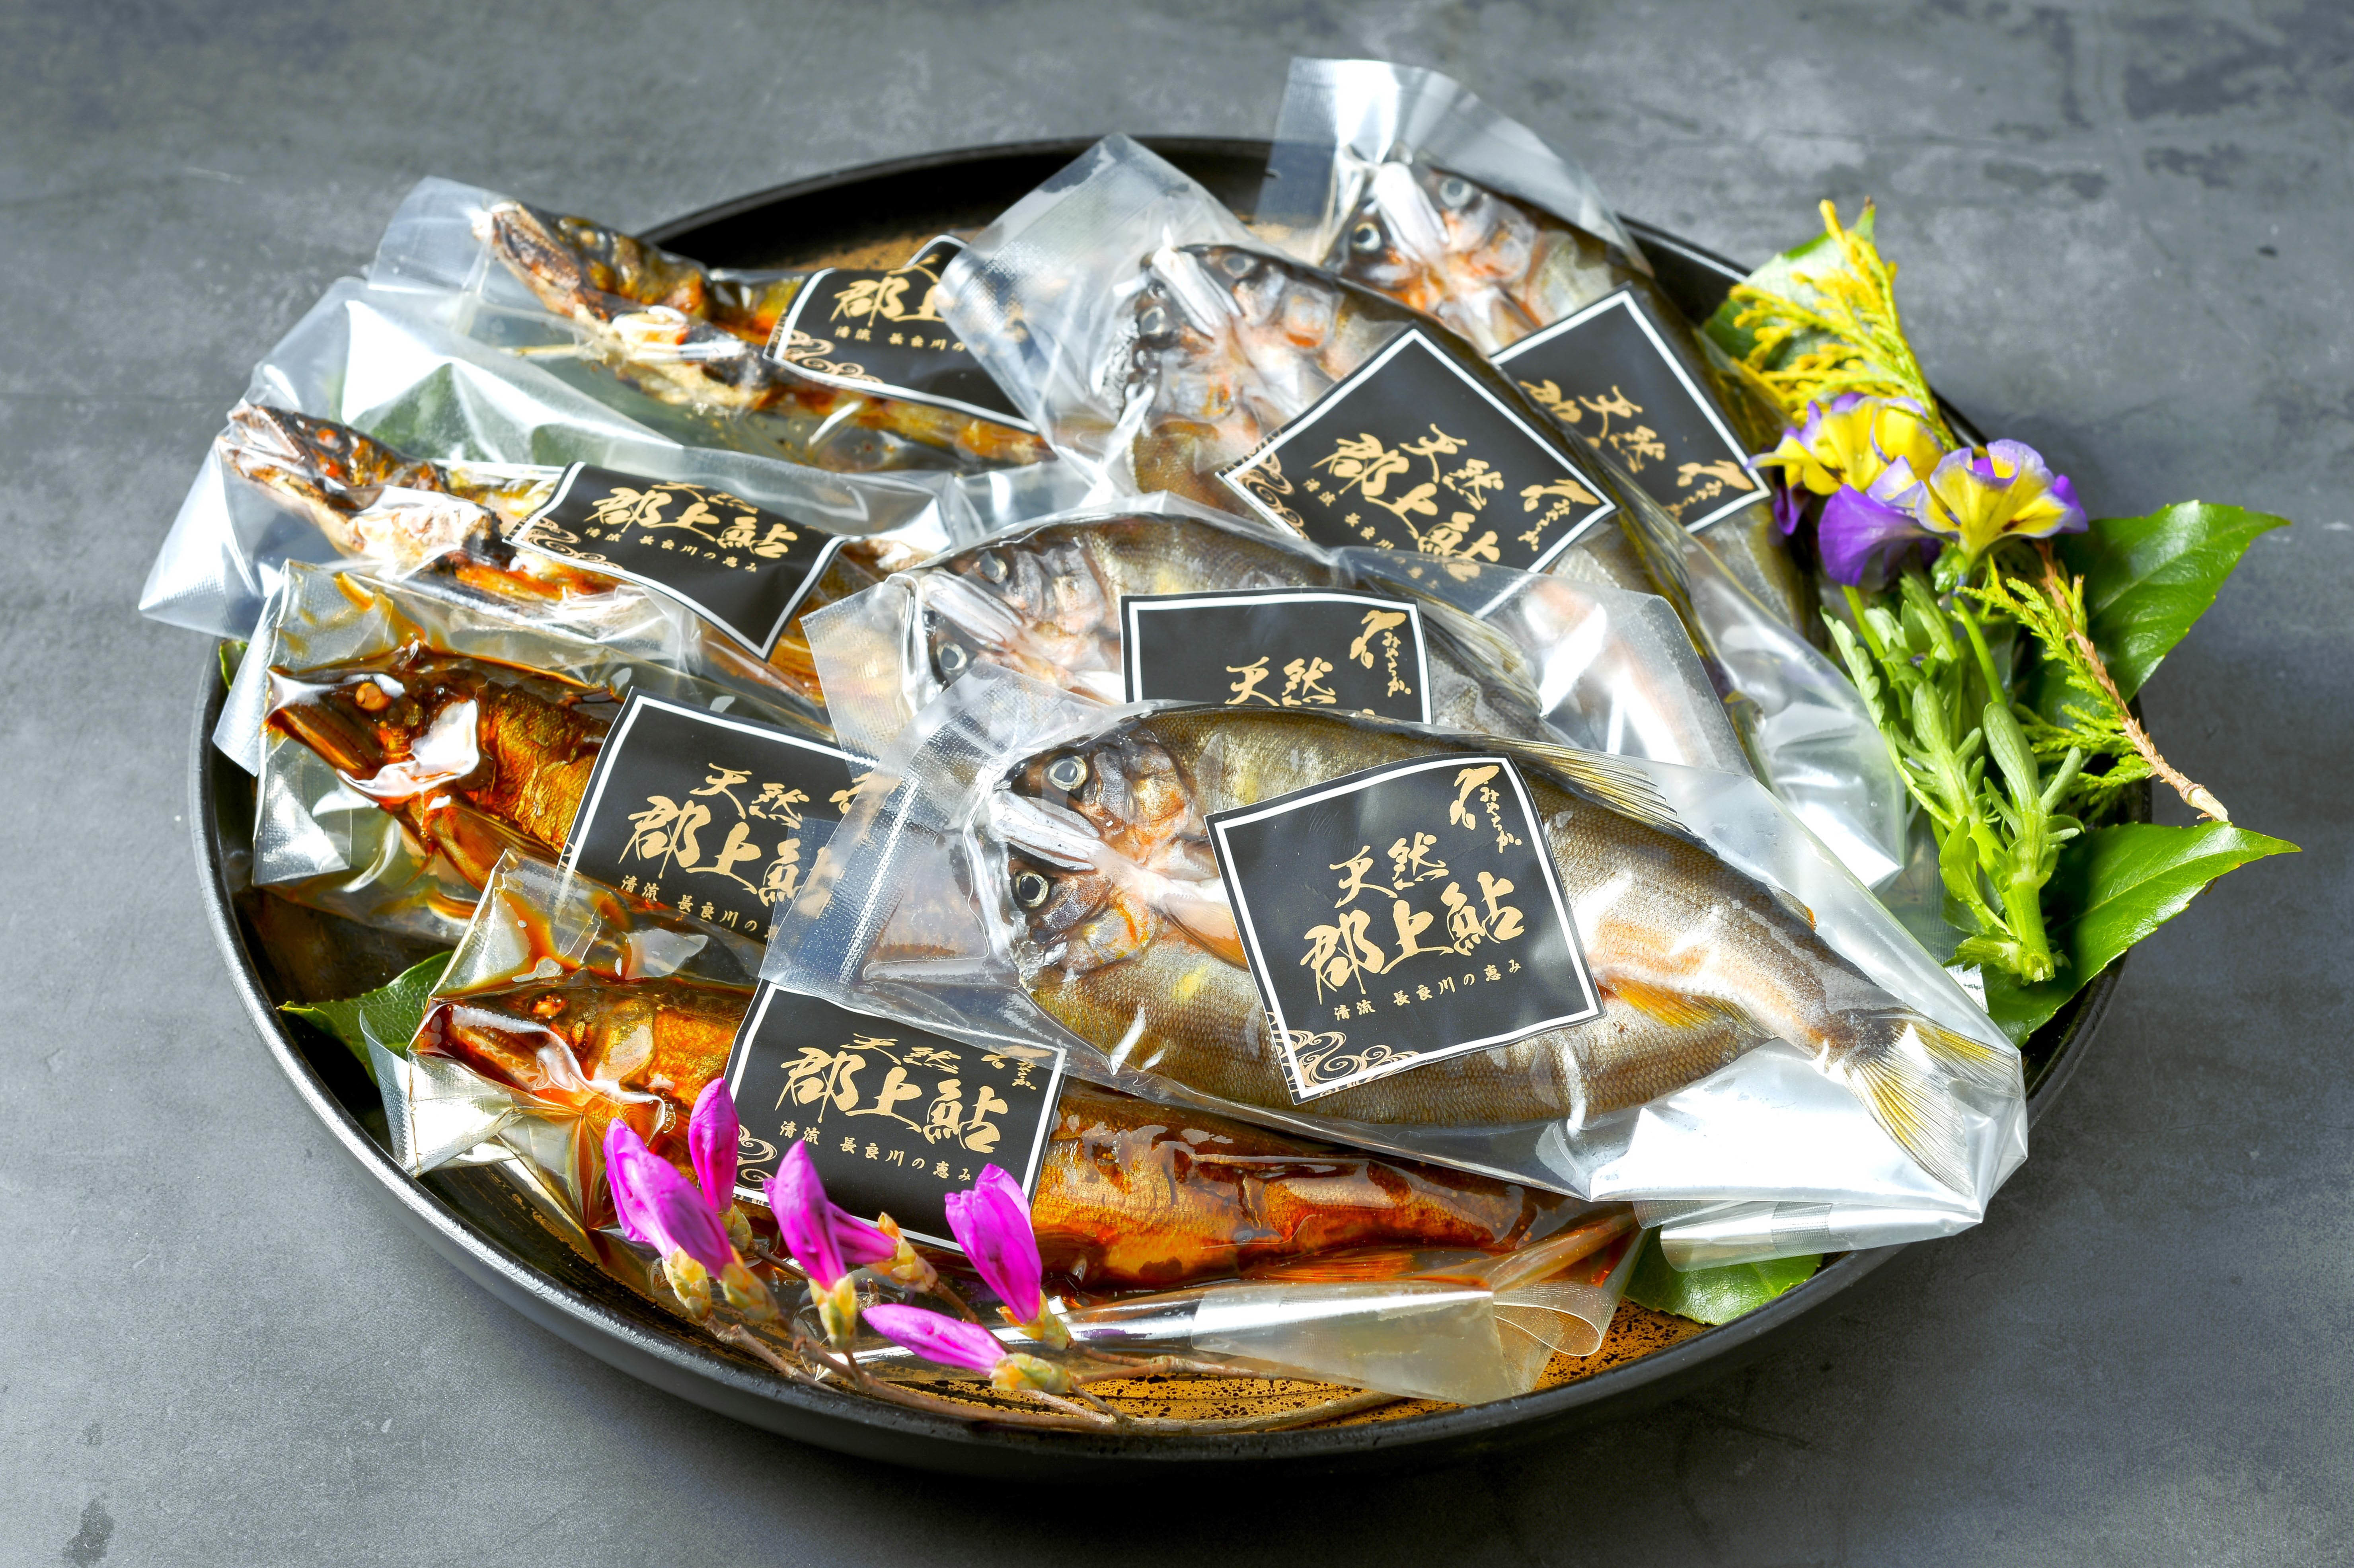 岐阜県「天然鮎みやちか」が専門店の味を自宅へお届け！
Amazonで5月13日販売スタート！ギフトにも最適！
特殊冷凍された天然鮎商品は温めるだけで食卓を華やかに彩る！